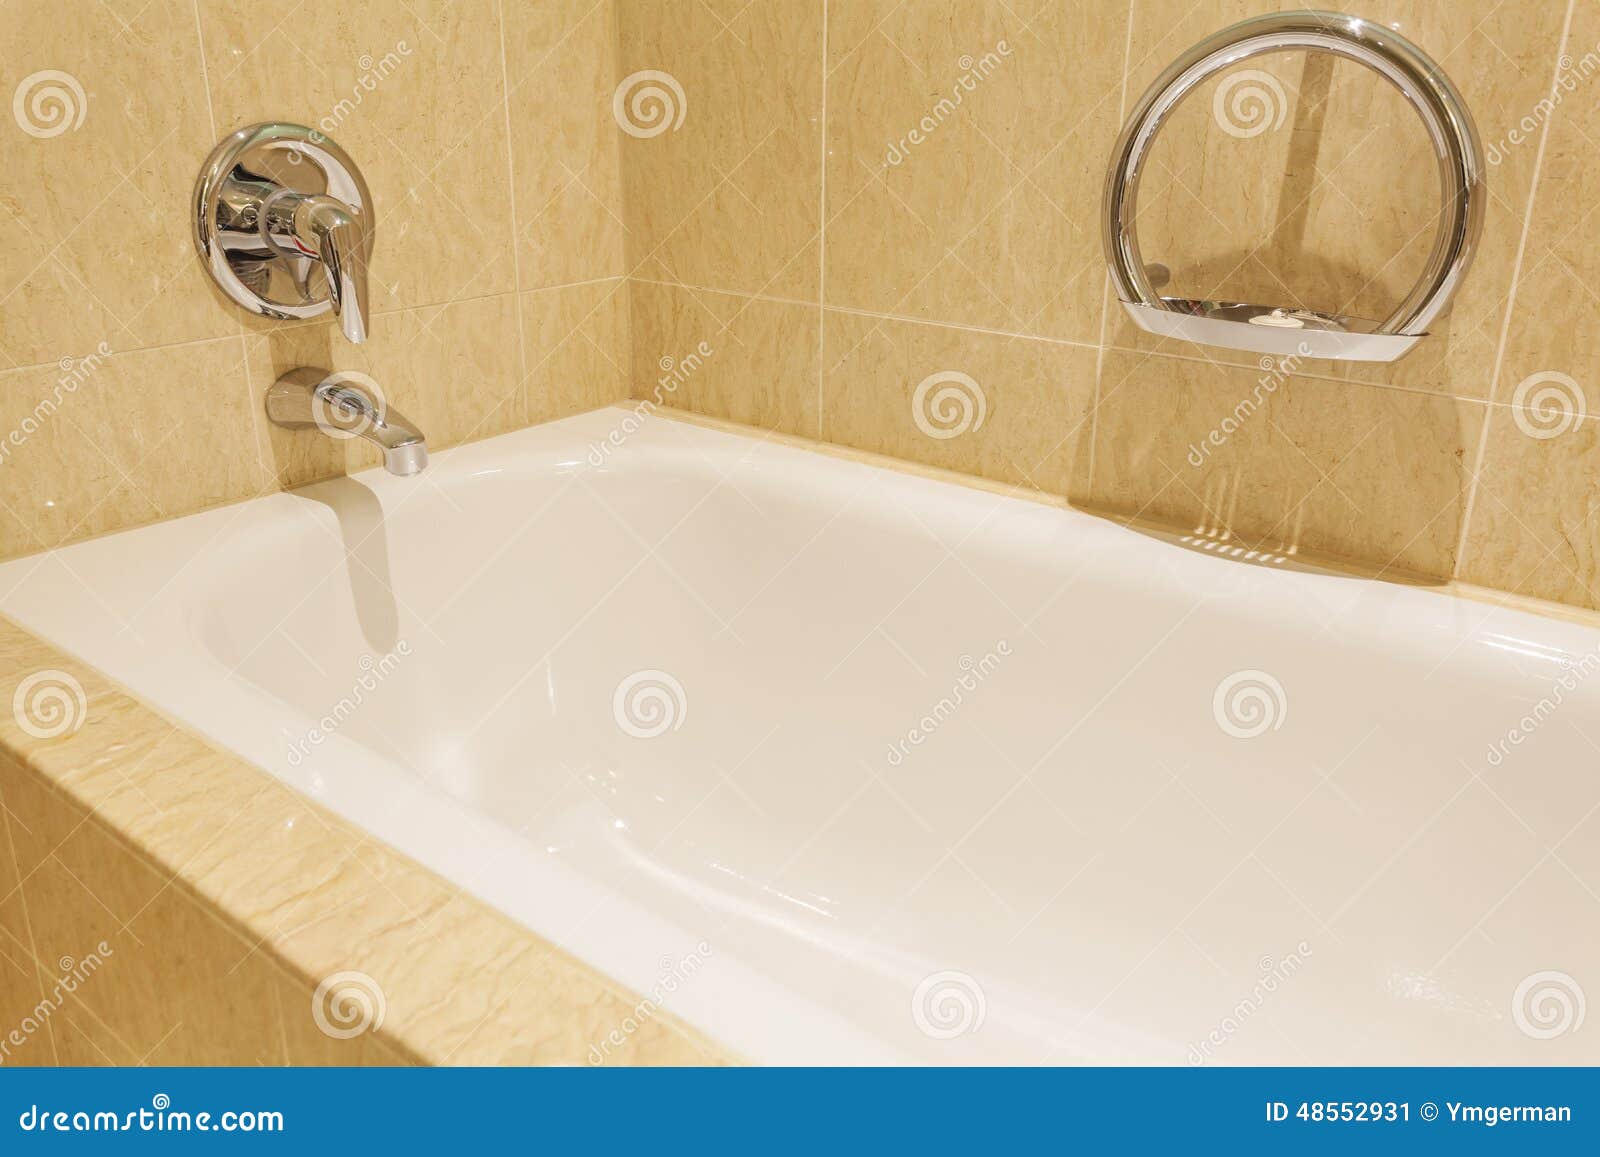 Bañera En Una Habitación Lujosa Imagen de archivo - Imagen de blanco